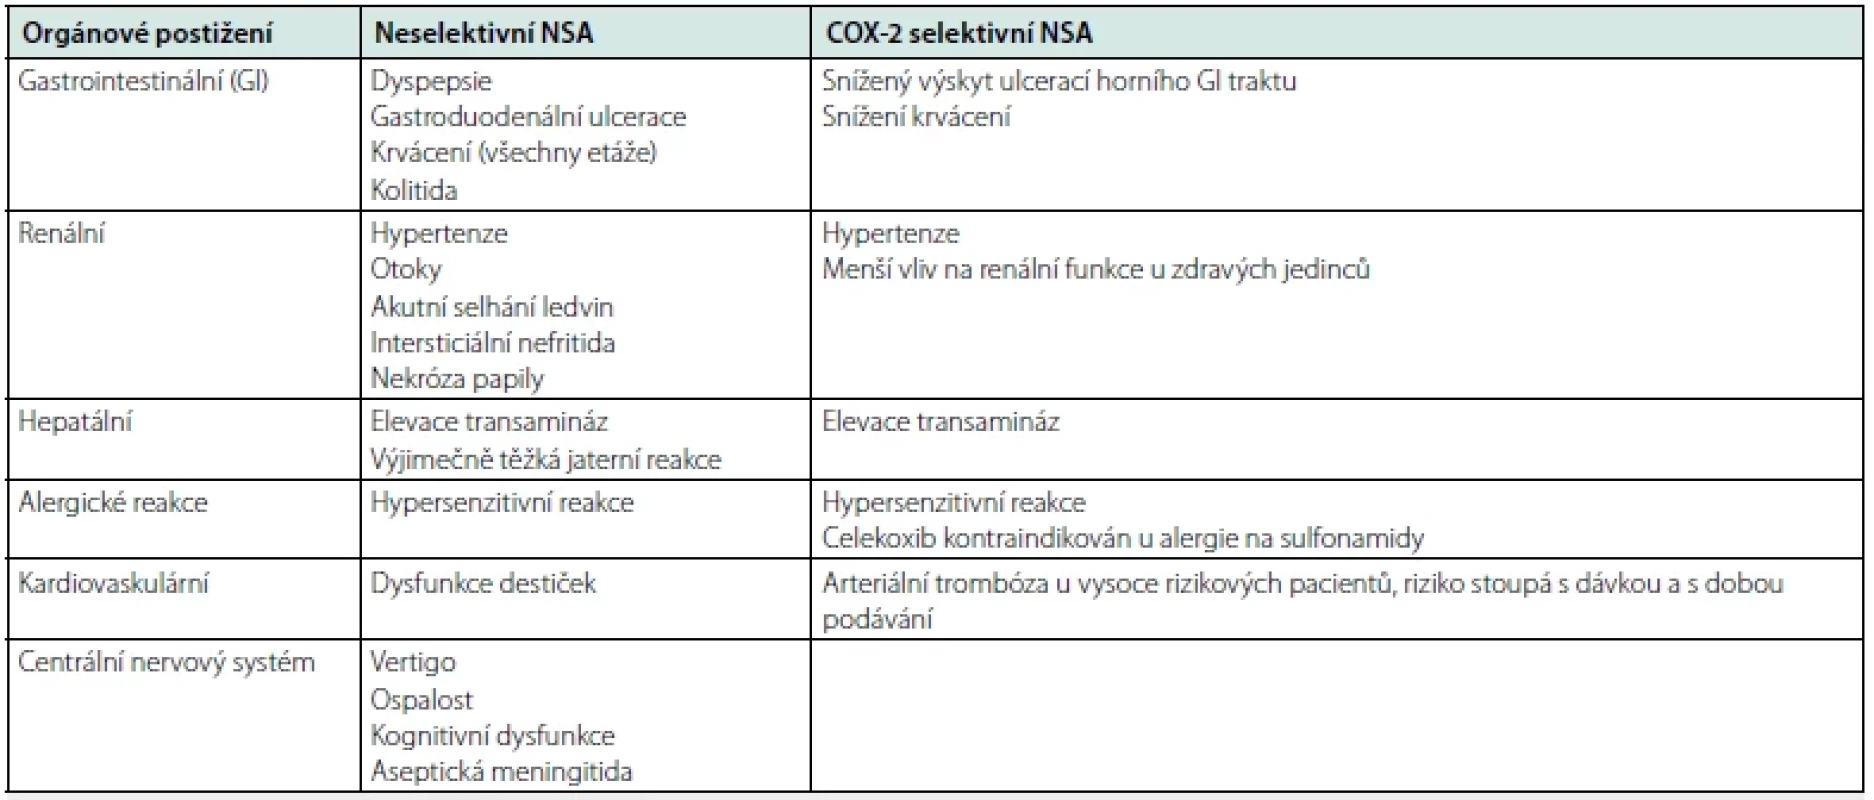 Nežádoucí účinky neselektivních i COX-2 selektivních nesteroidních antirevmatik